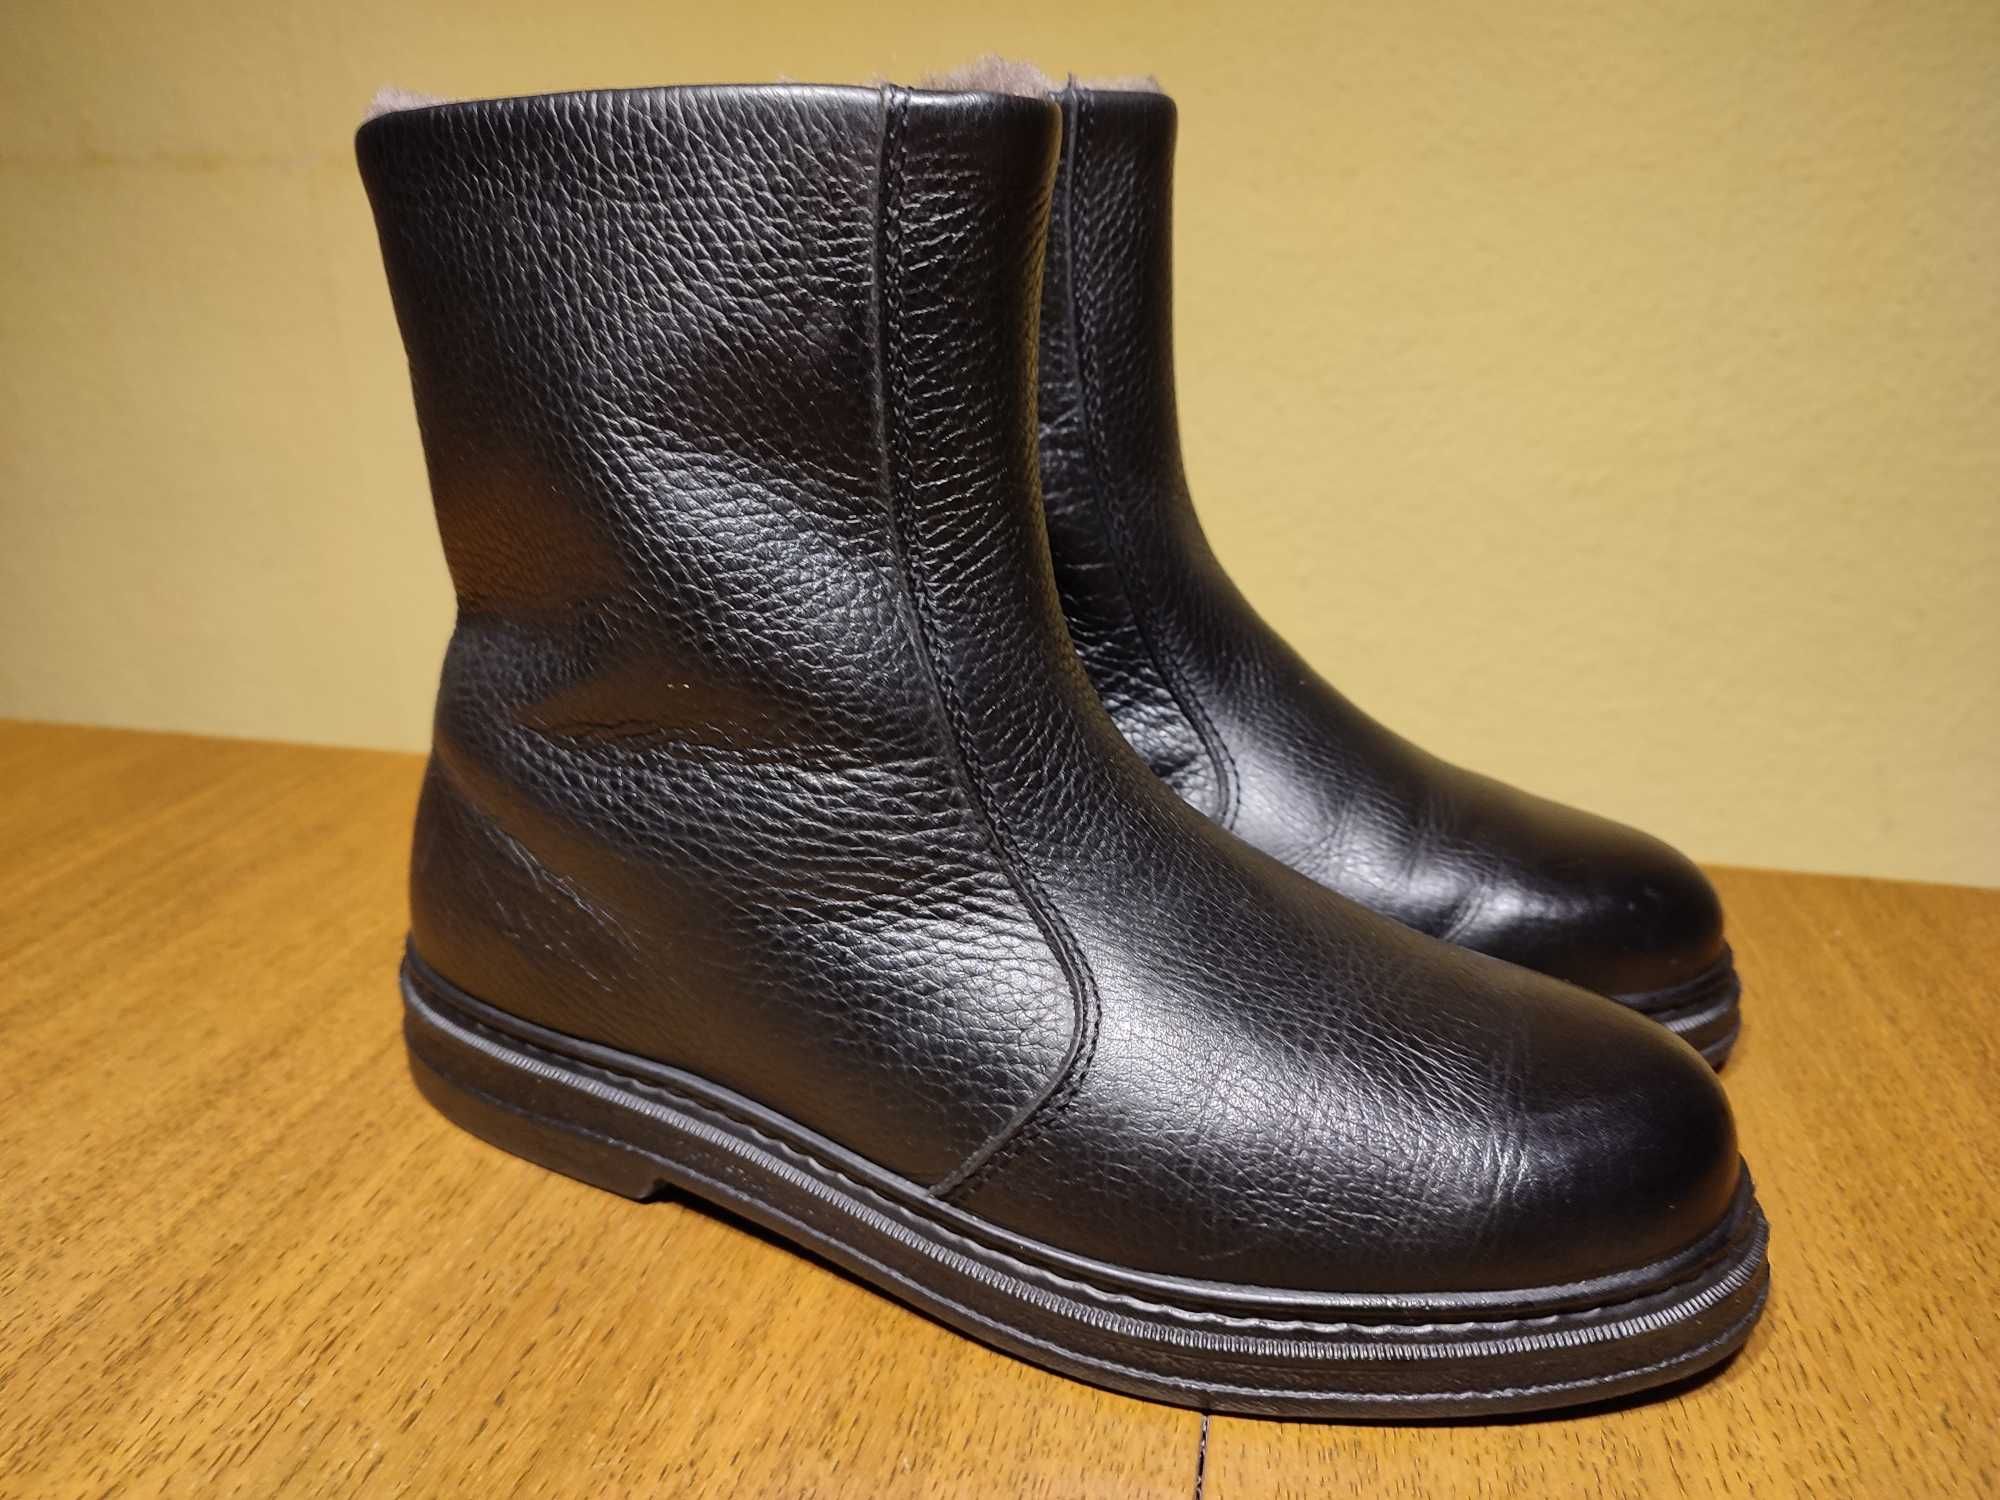 Buty zimowe JOMOS skóra naturalna, męskie r. 40 (wkł. 26cm)